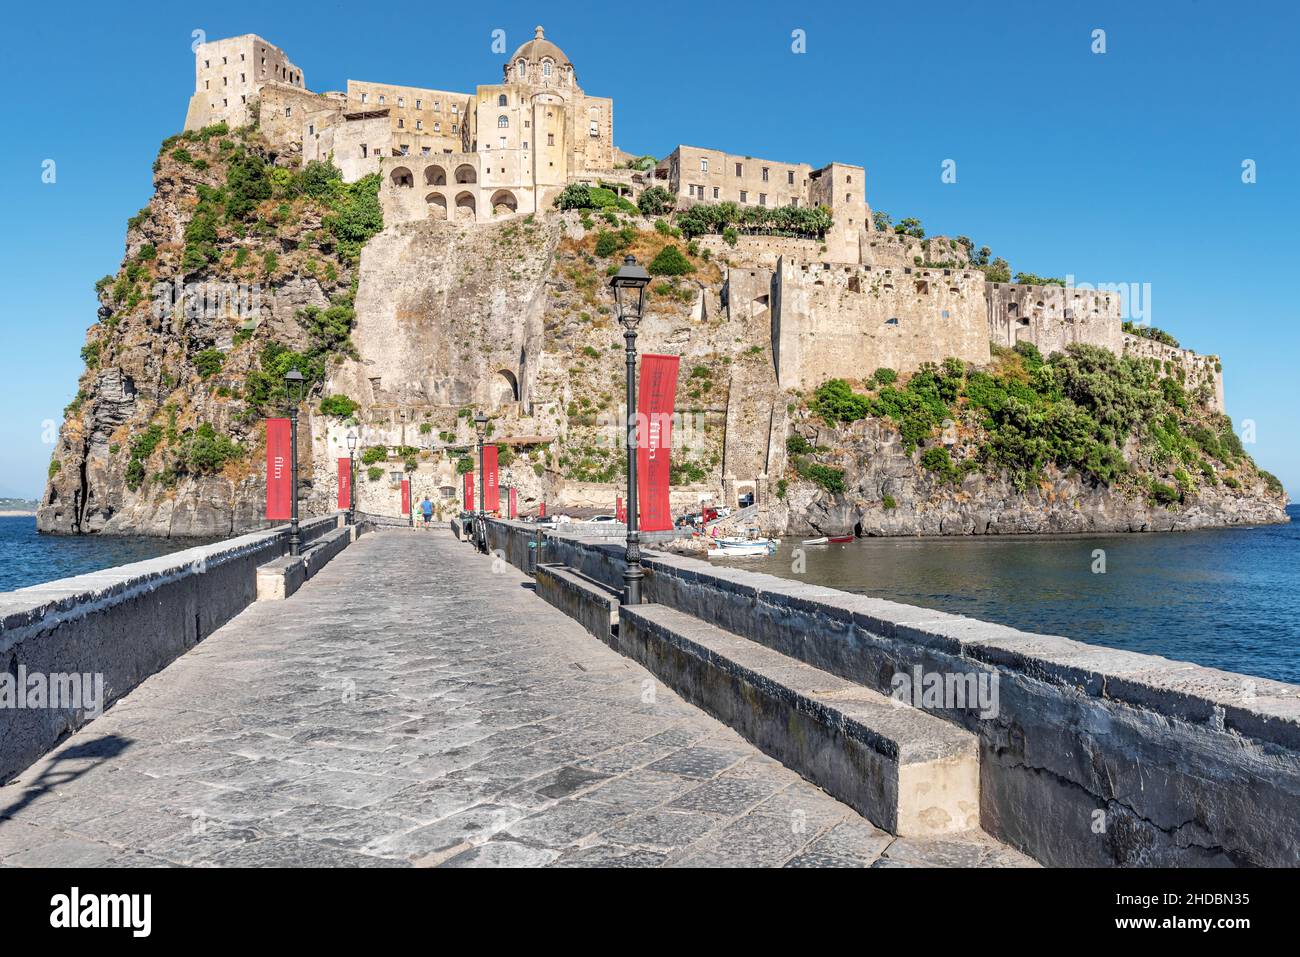 Naples, Ischia, Italie - juillet 05 2021 : entrée au château aragonais, une imposante forteresse sur l'île d'Ischia Banque D'Images